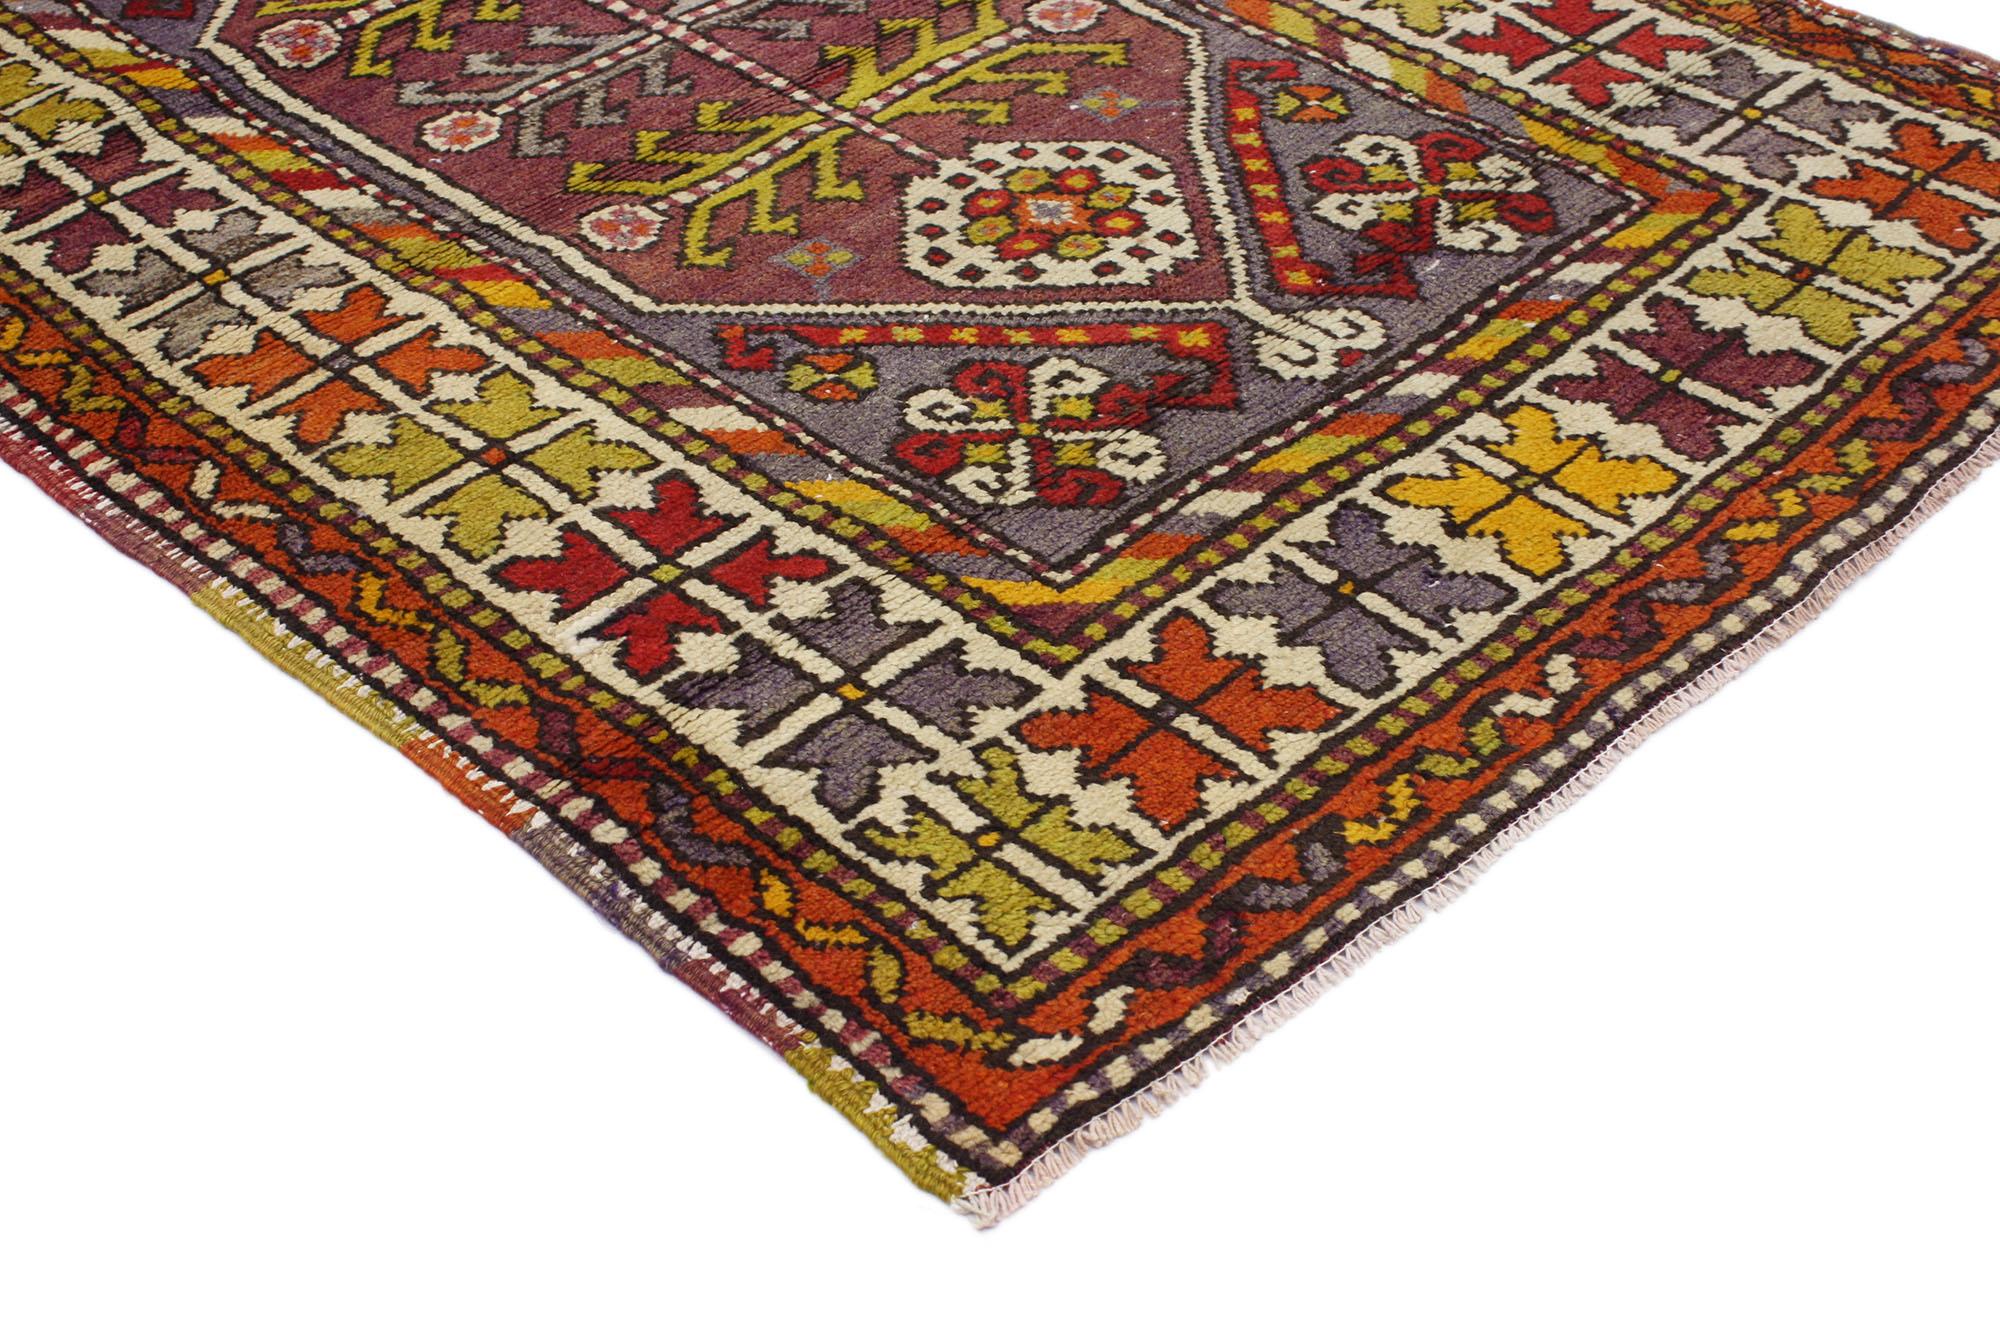 51762 Vintage Turkish Oushak Rug, 03'00 x 04'09.
Dieser farbenfrohe Oushak-Teppich ist eine Mischung aus farbenfrohem Design und skurrilem Boho-Stil. Das auffällige Tribal-Muster und die lebendigen Farben, die in dieses Stück eingewebt sind, sorgen